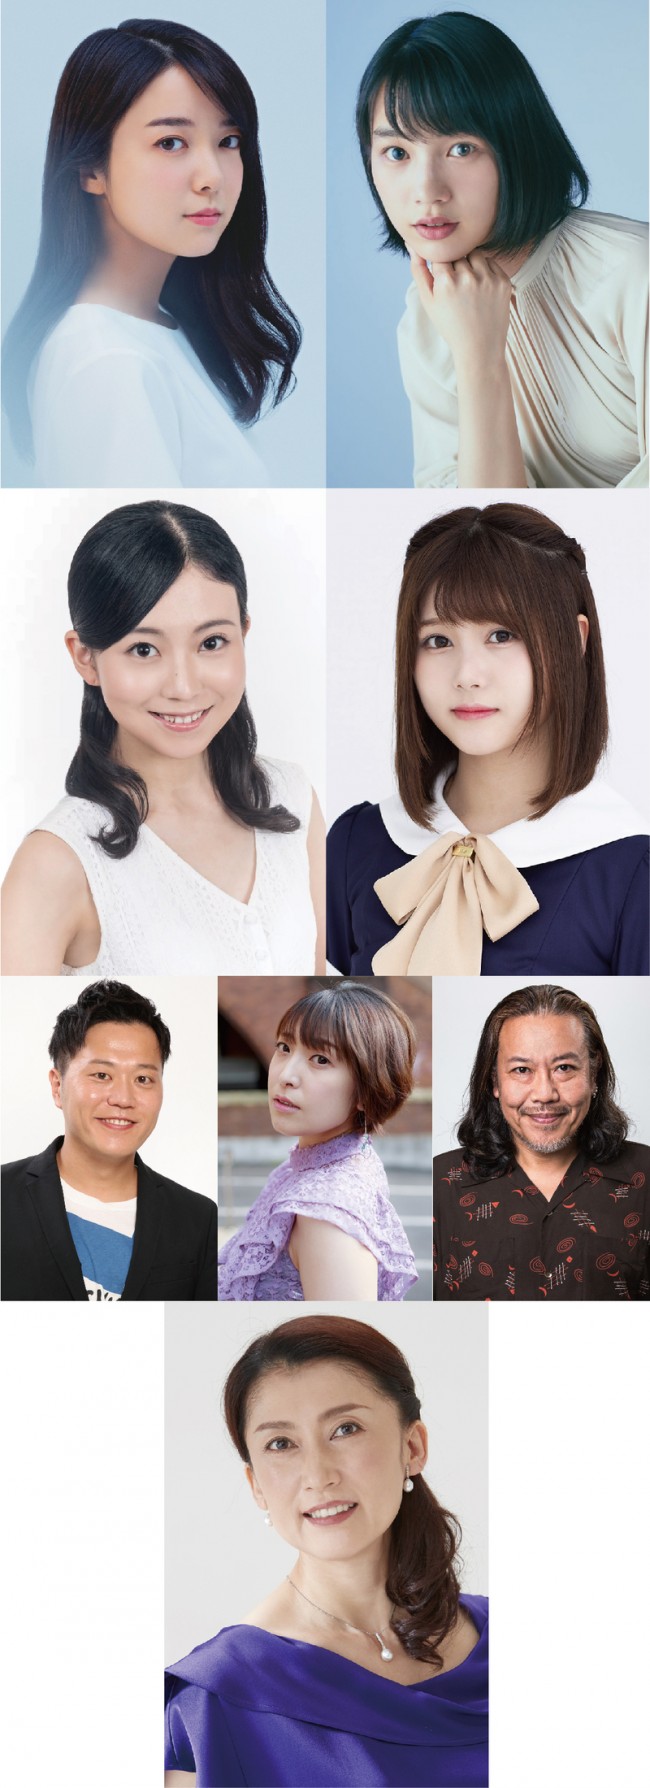 NHKみんなのうたミュージカル『リトル・ゾンビガール』発表されたキャスト陣